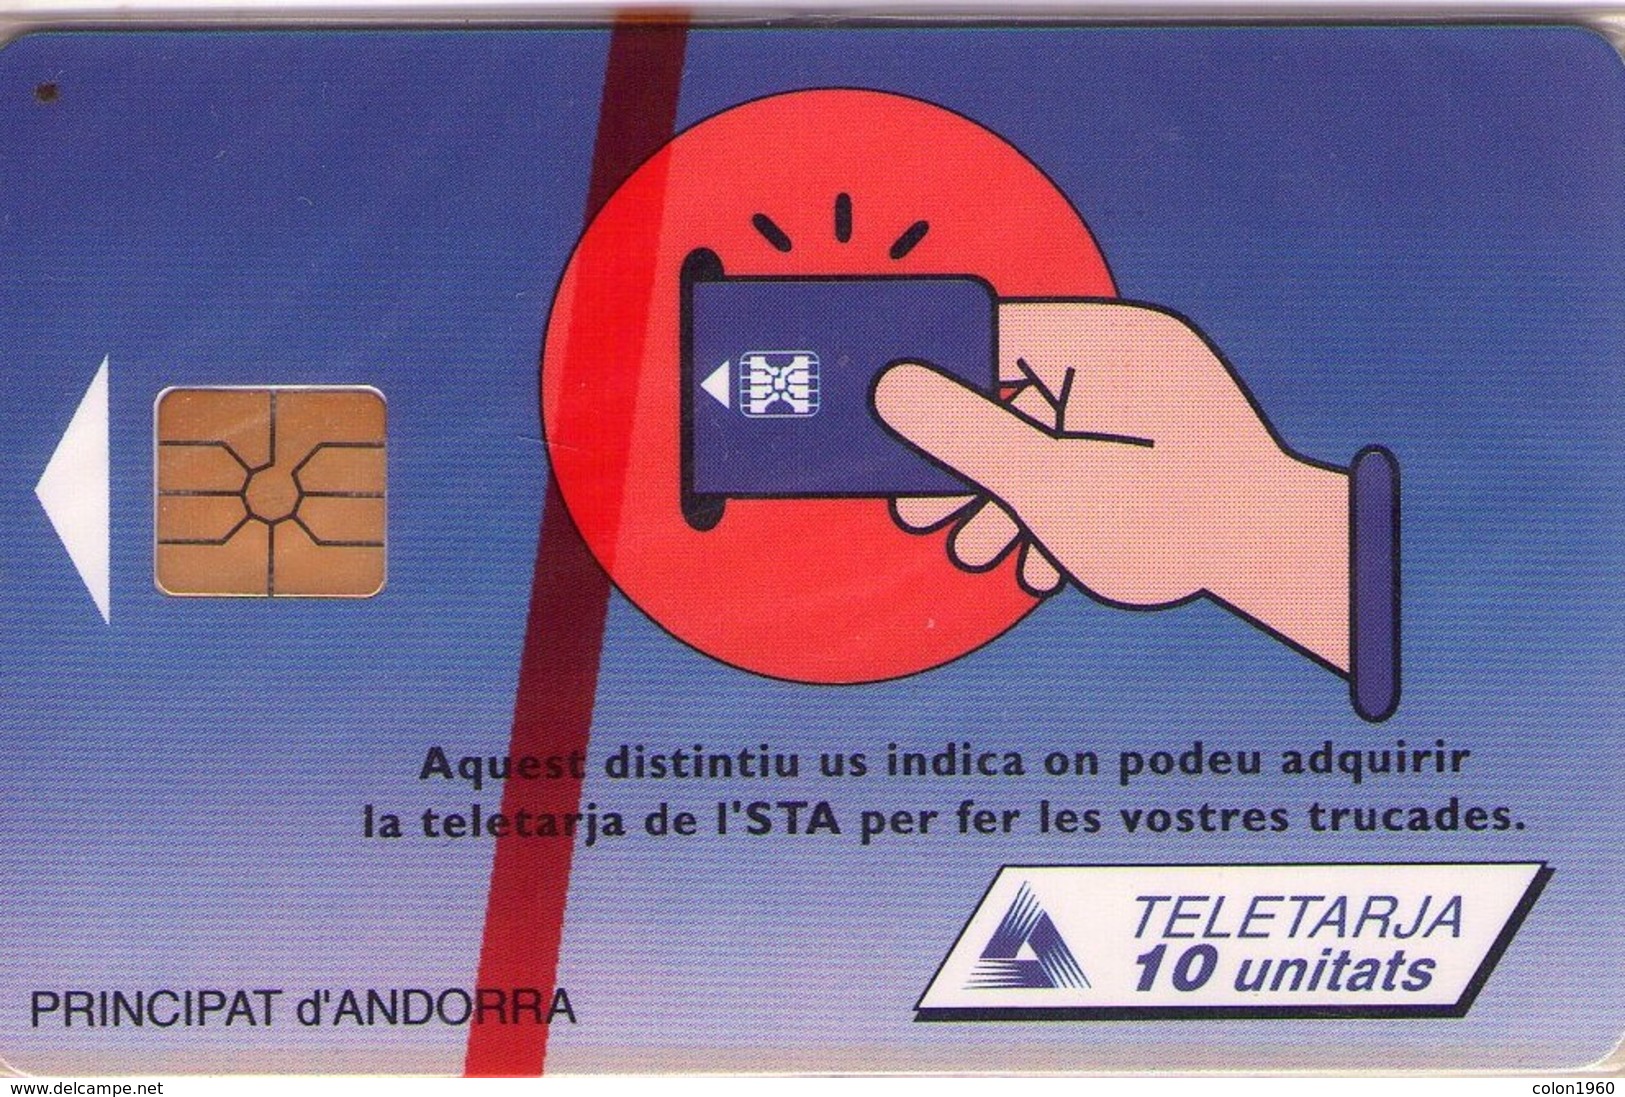 ANDORRA. Mailing.1995-06. 28000 Ex. AD-STA-0029A. (077). MINT - NUEVA. - Andorra